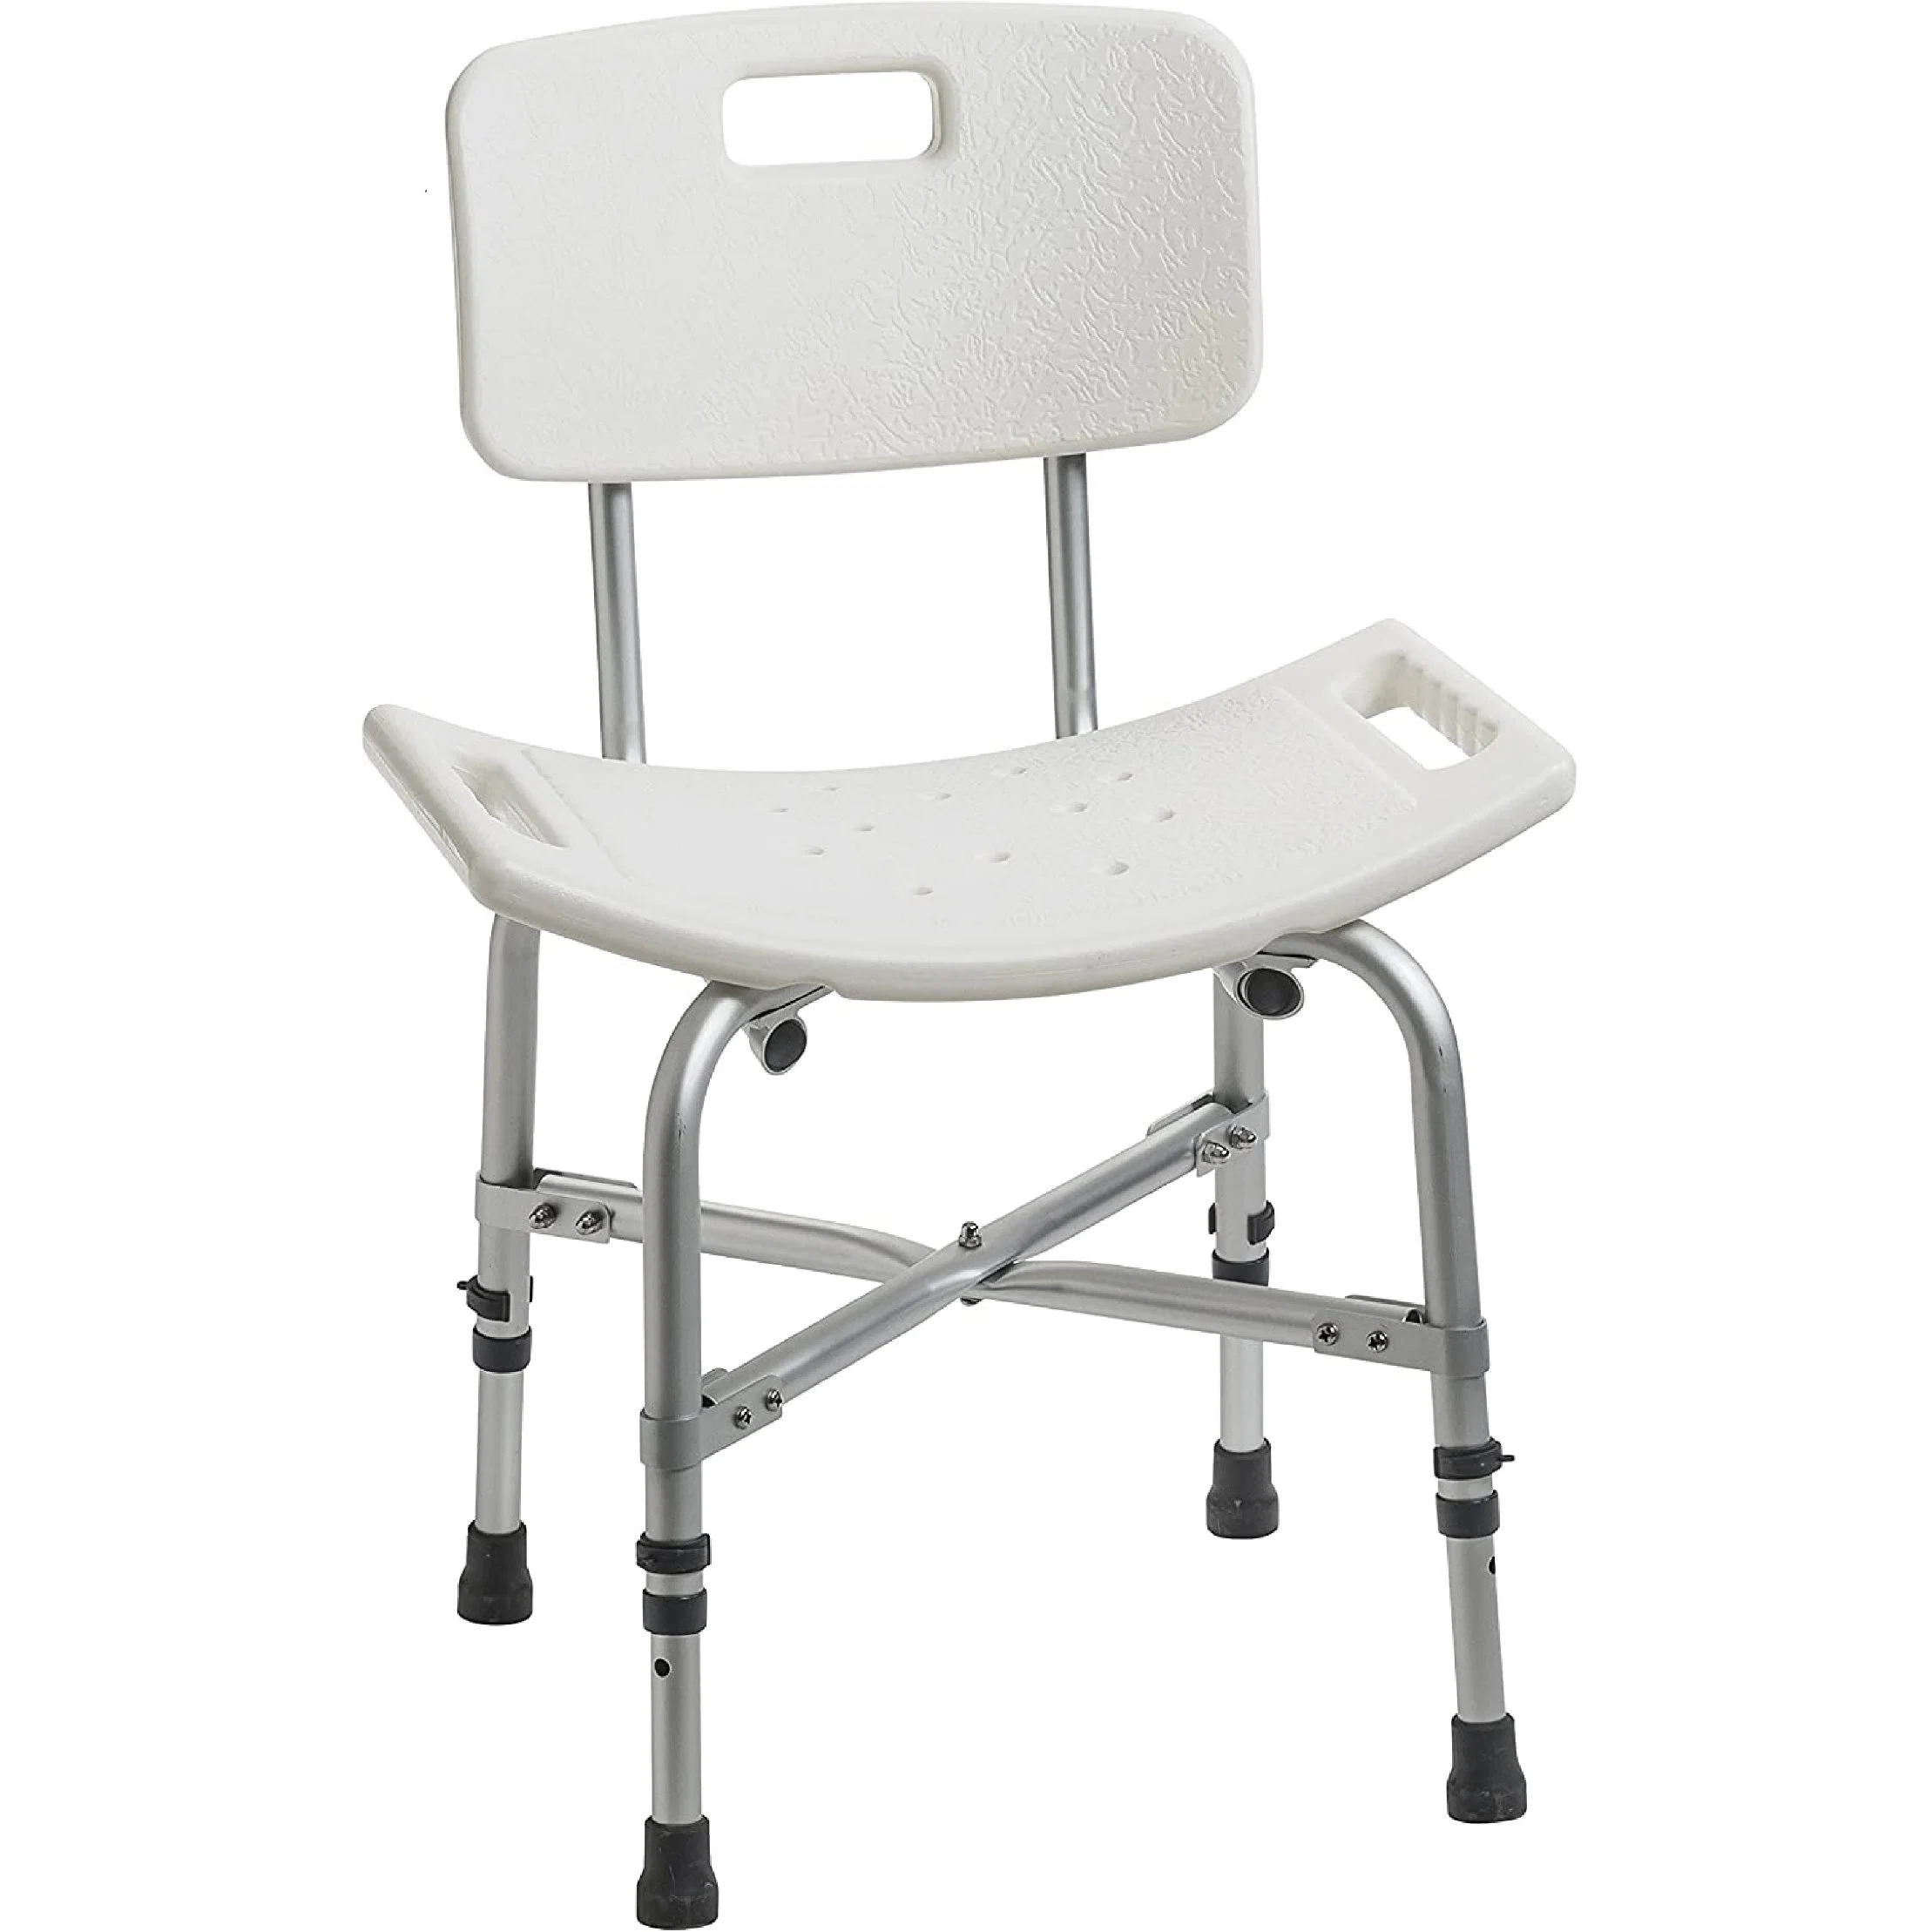 Bad Dusche Sitz Erwachsene Badezimmer Stuhl für behinderte ältere Menschen Rollstuhl